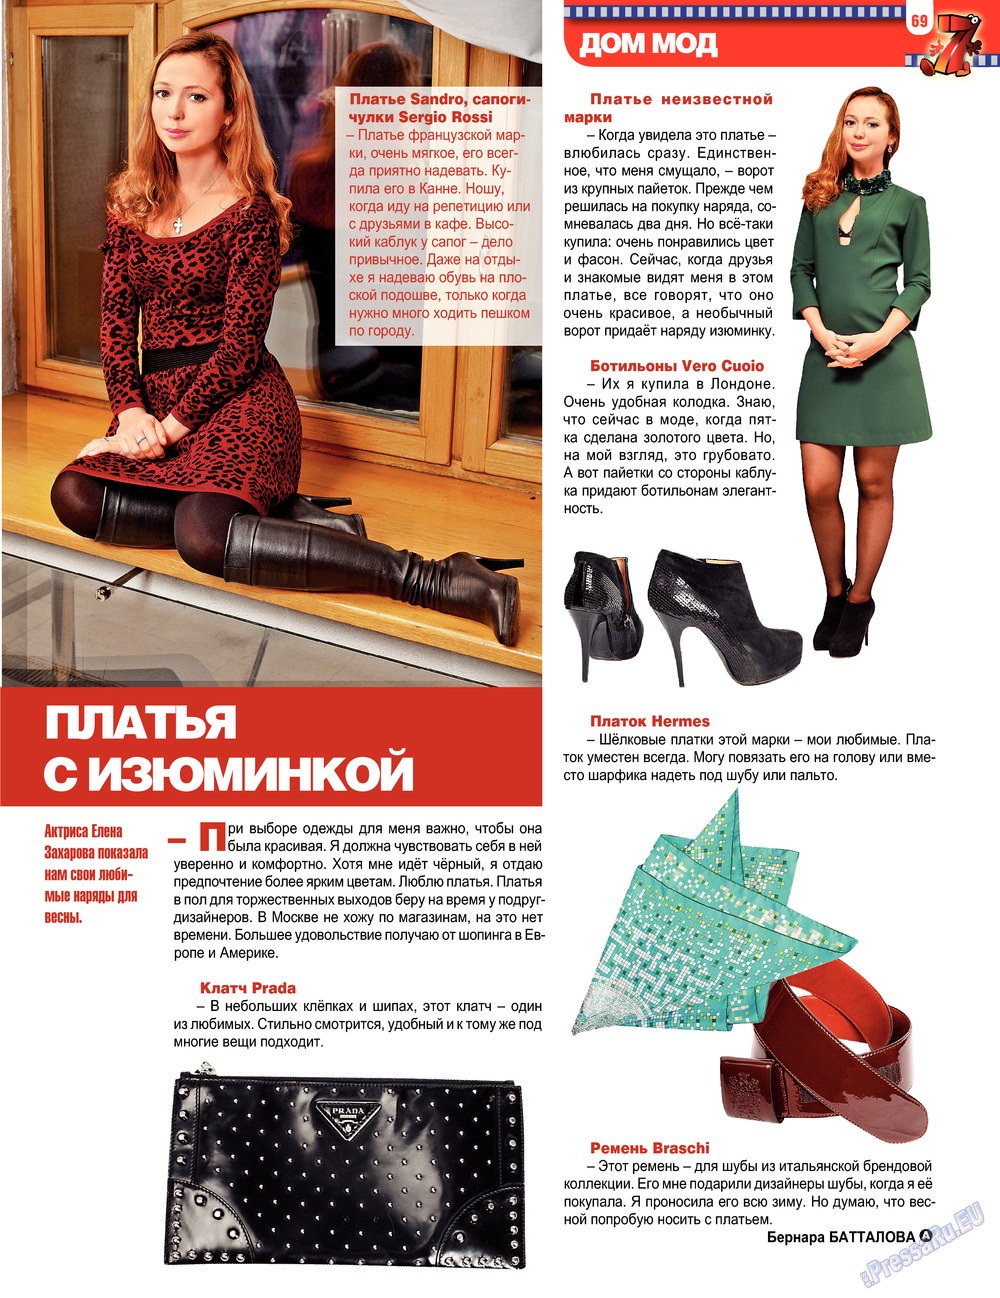 7плюс7я, журнал. 2013 №12 стр.69